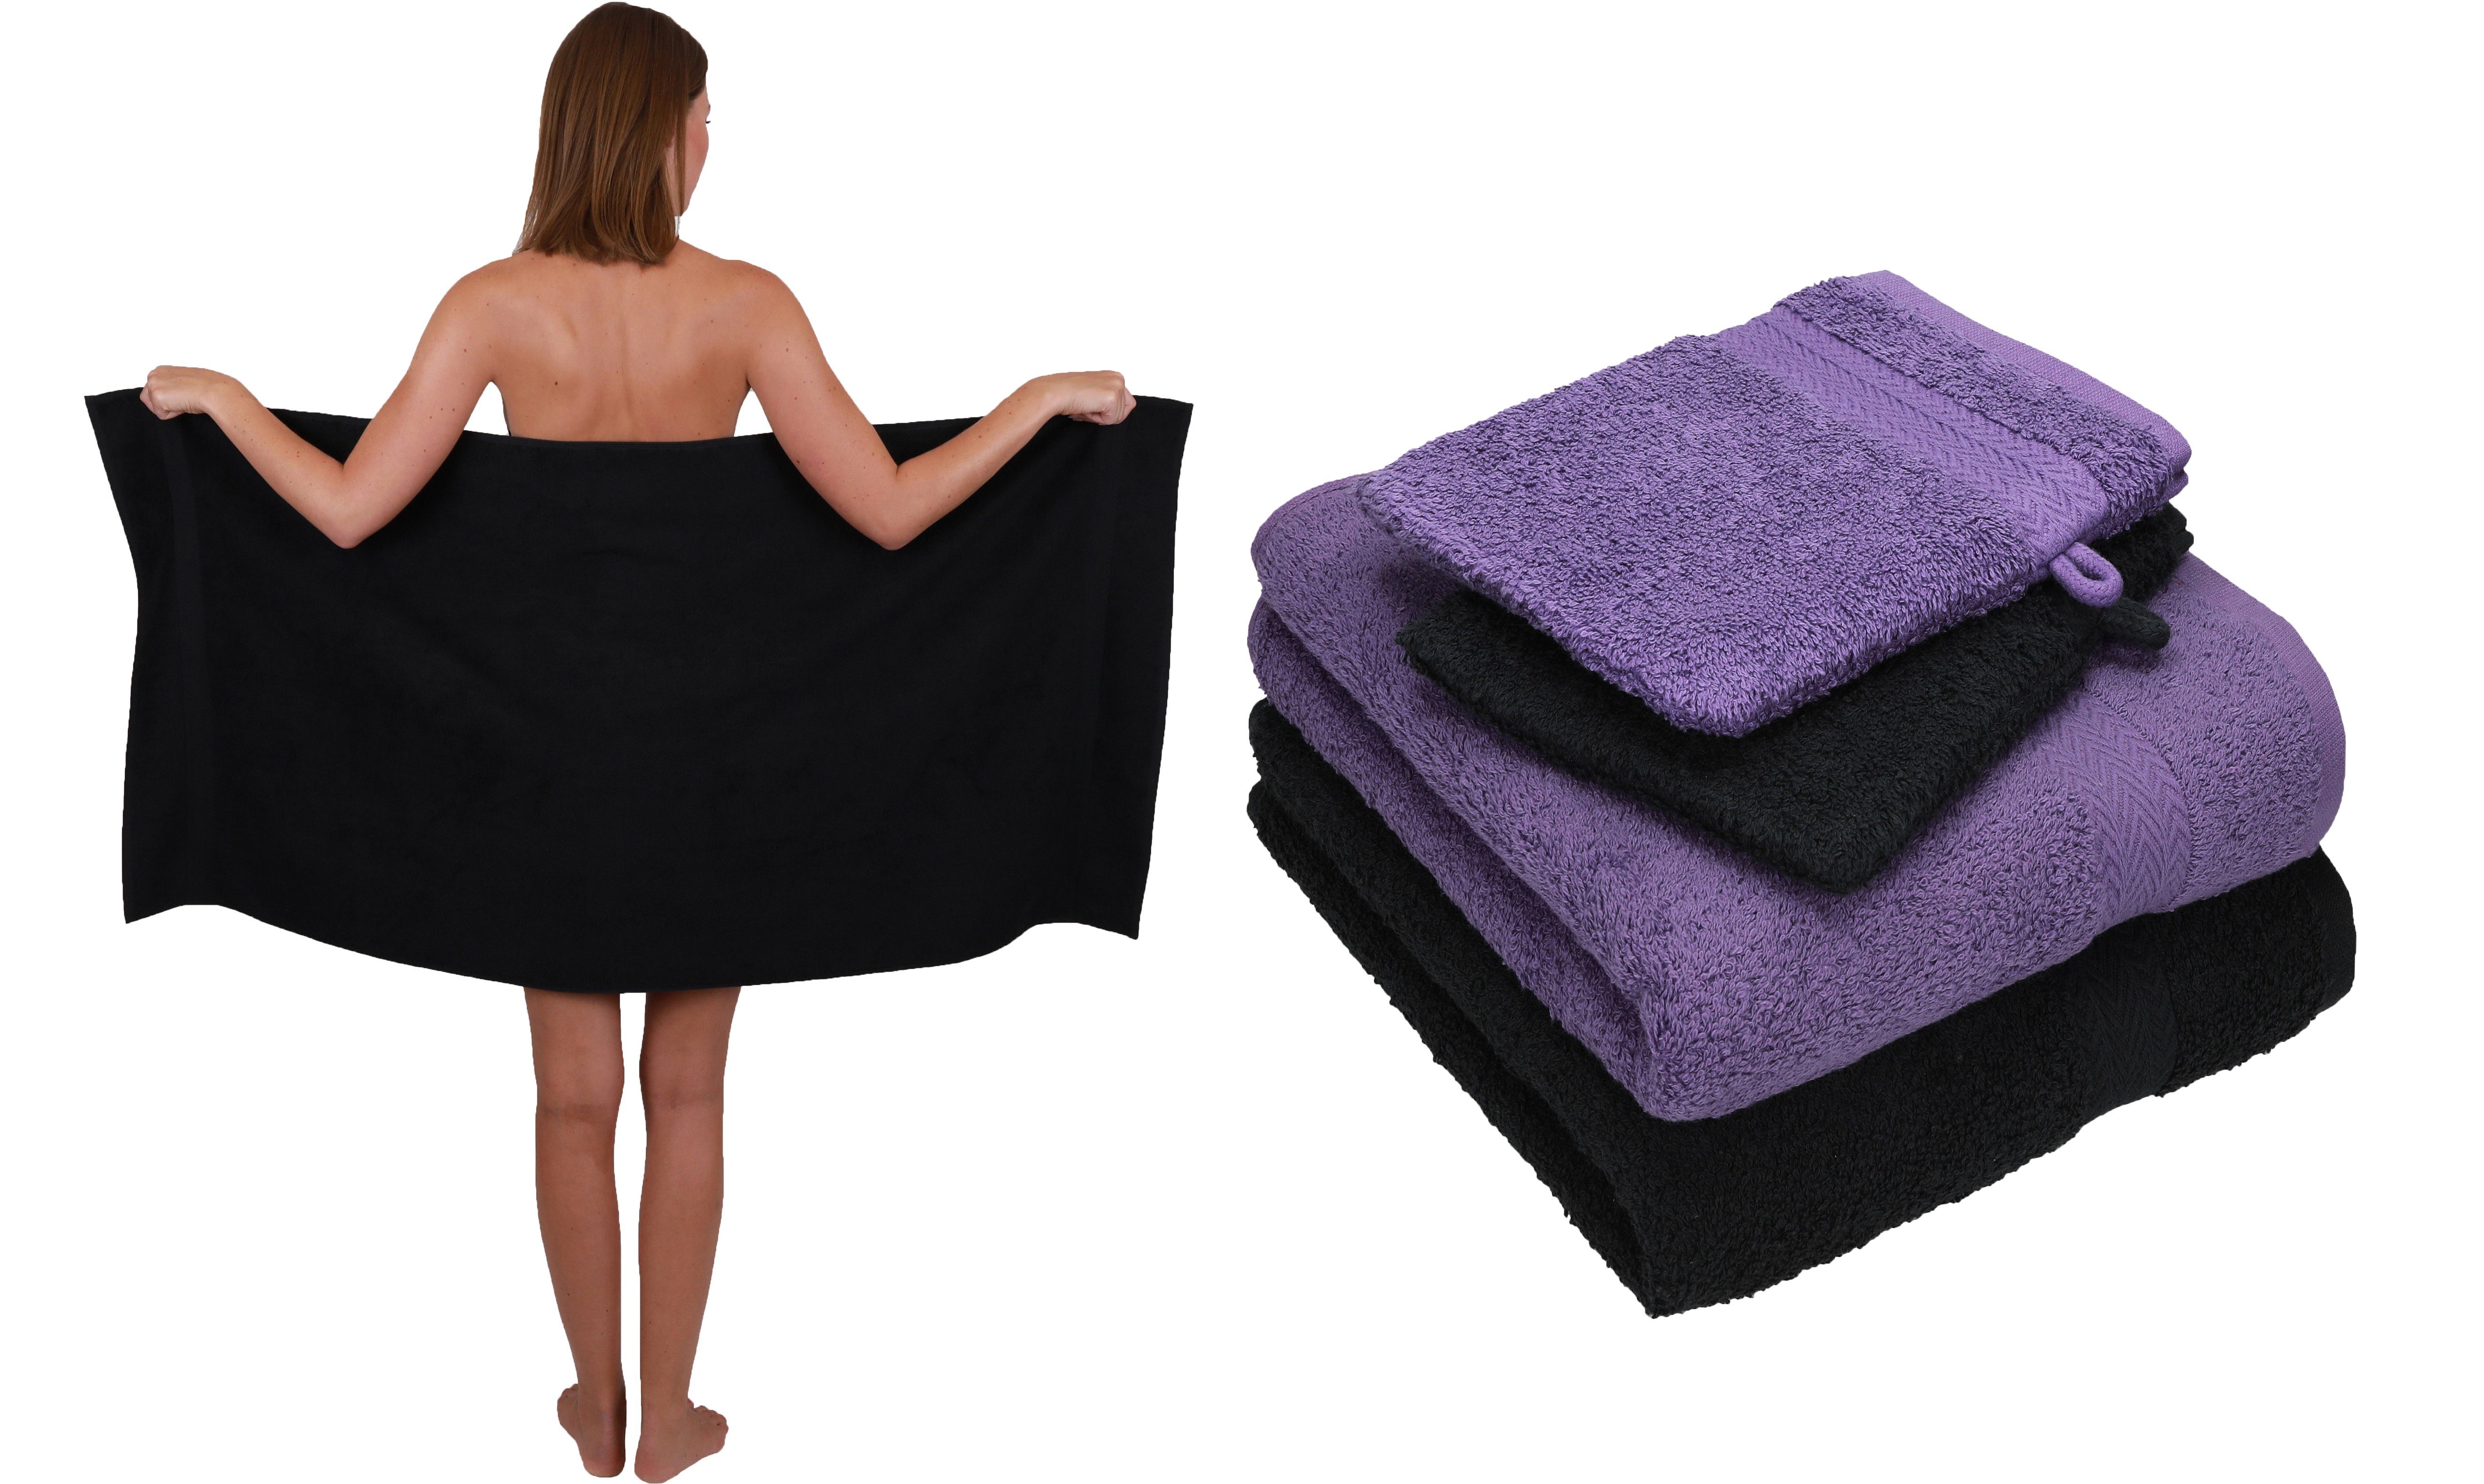 Betz Handtuch Set 5 TLG. Handtuch Set Single Pack 100% Baumwolle 1 Duschtuch 2 Handtücher 2 Waschhandschuhe, 100% Baumwolle schwarz-lila